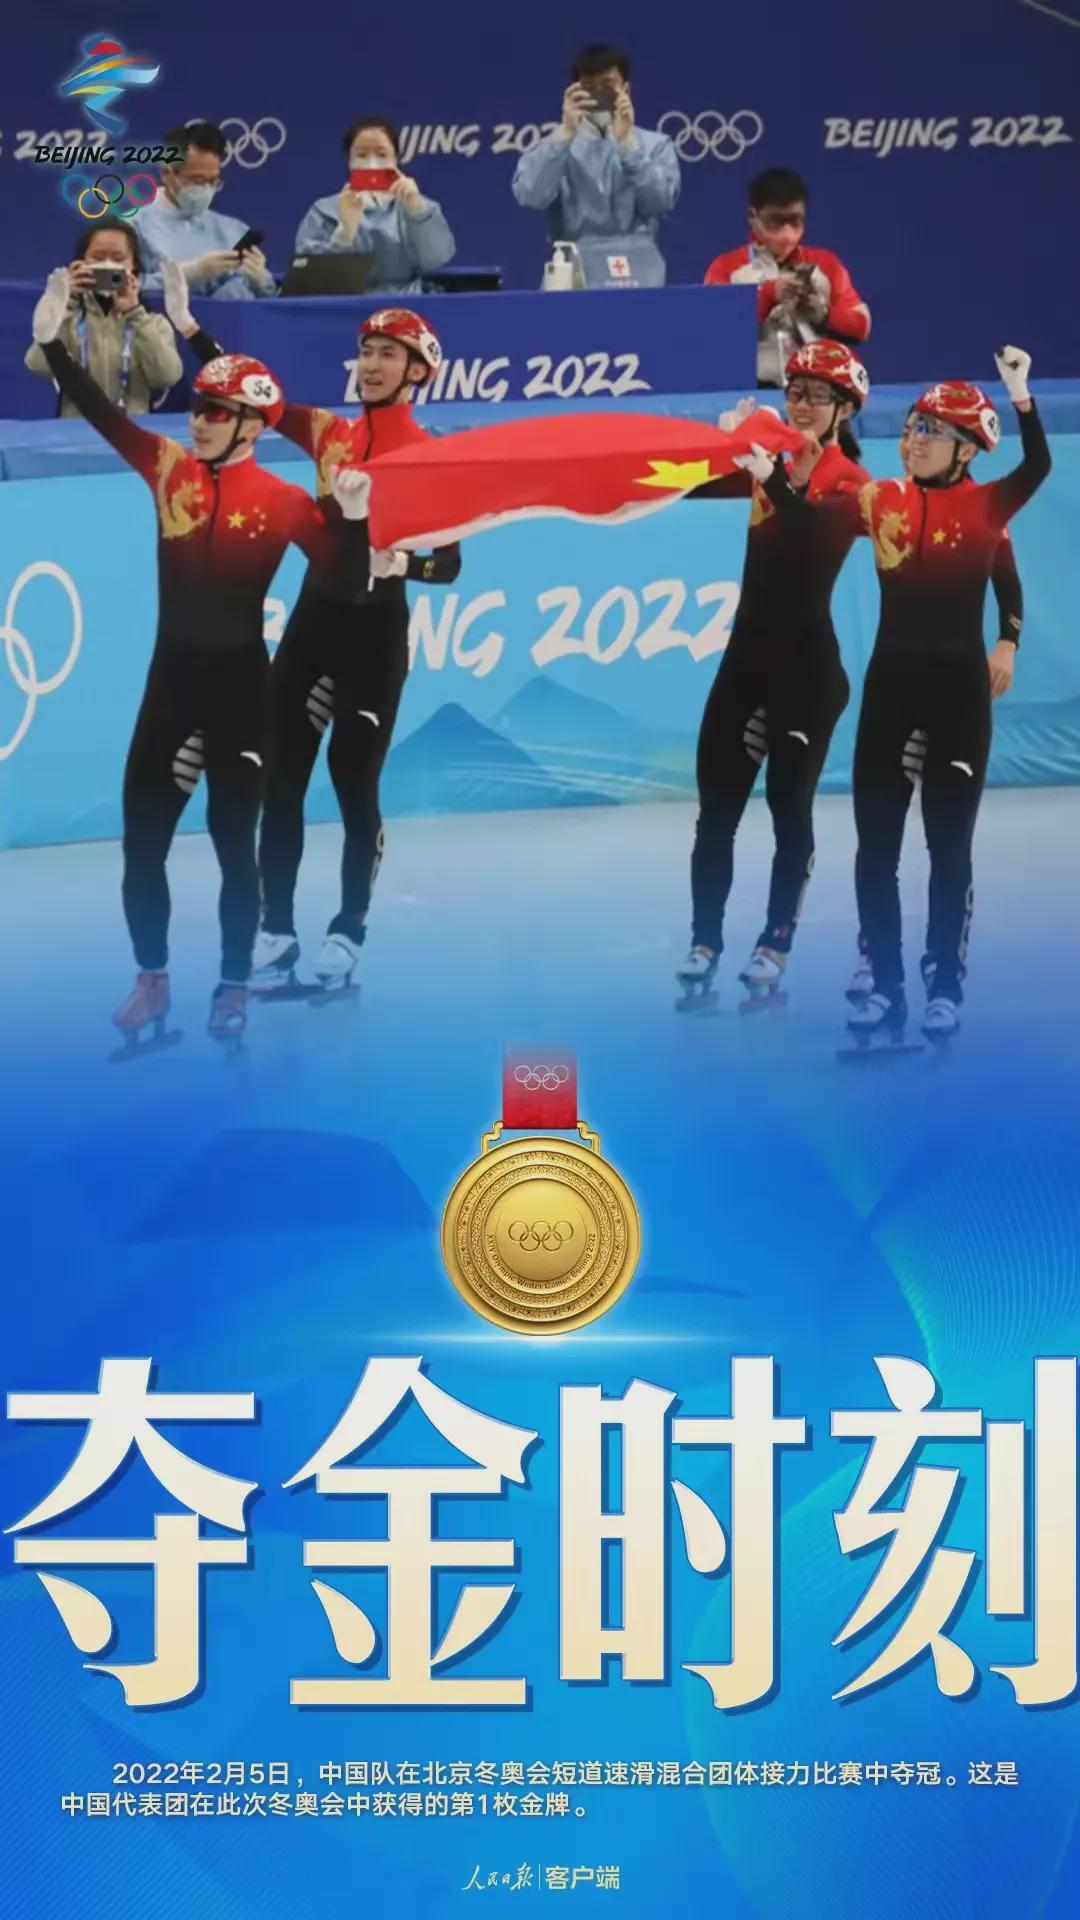 中国队成功夺冠,为中国体育代表团夺得本届冬奥会首金!